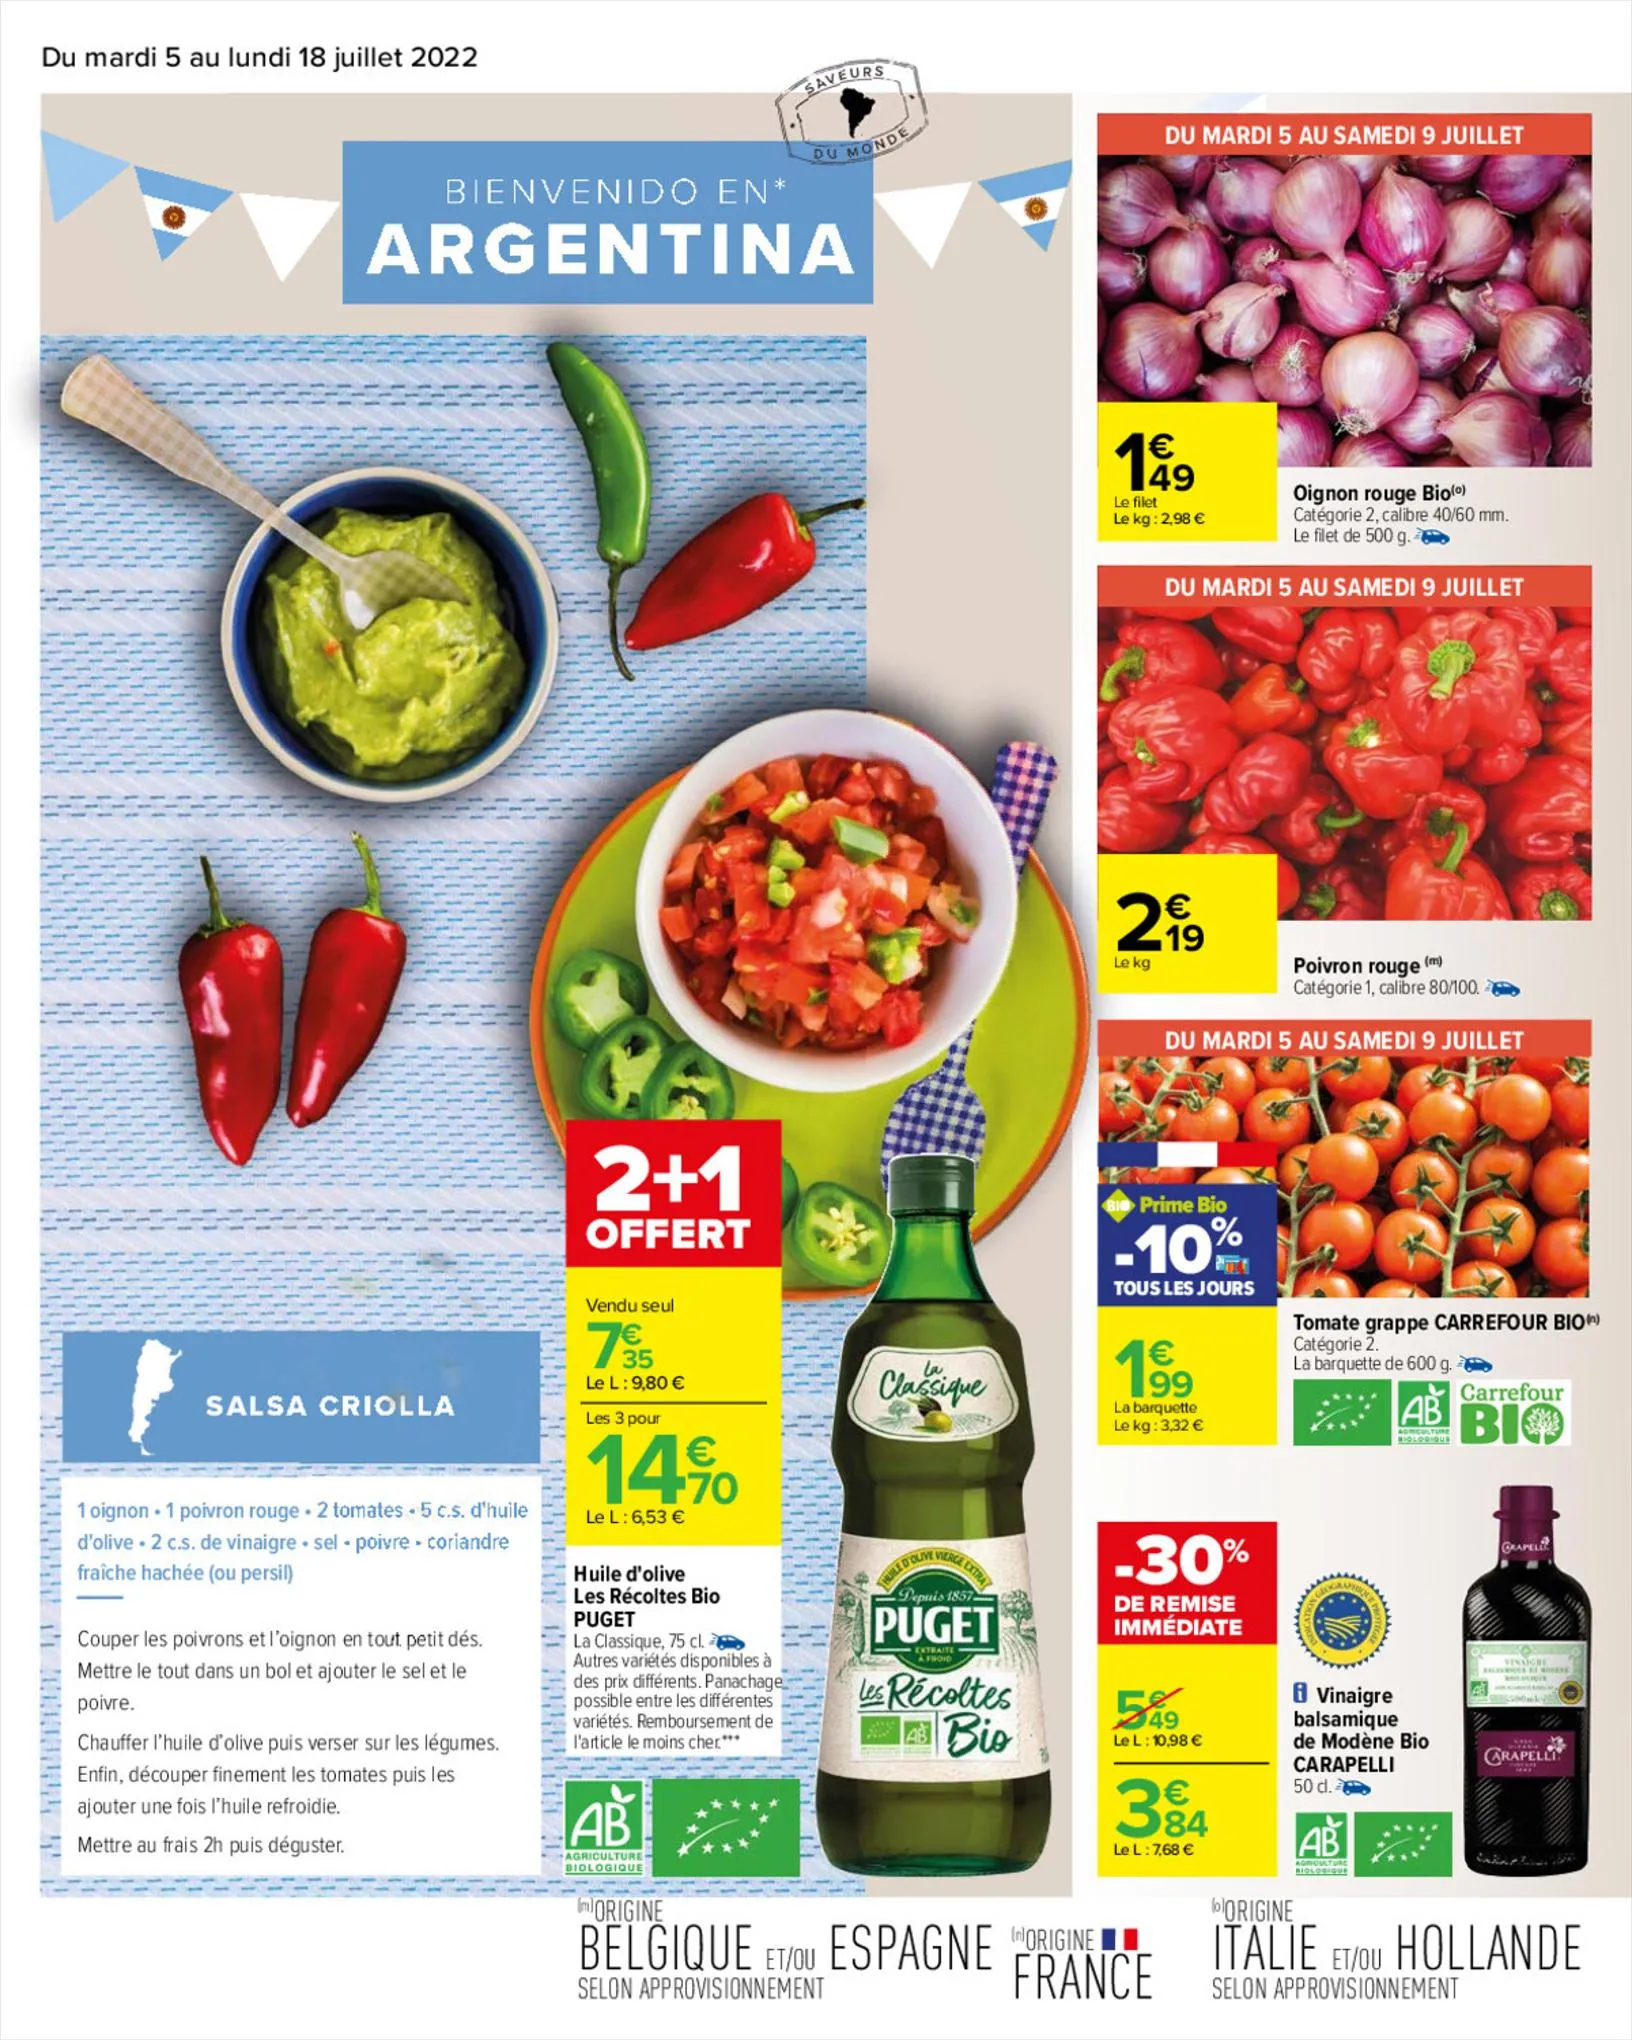 Catalogue Bienvenue en Amérique latine, page 00010